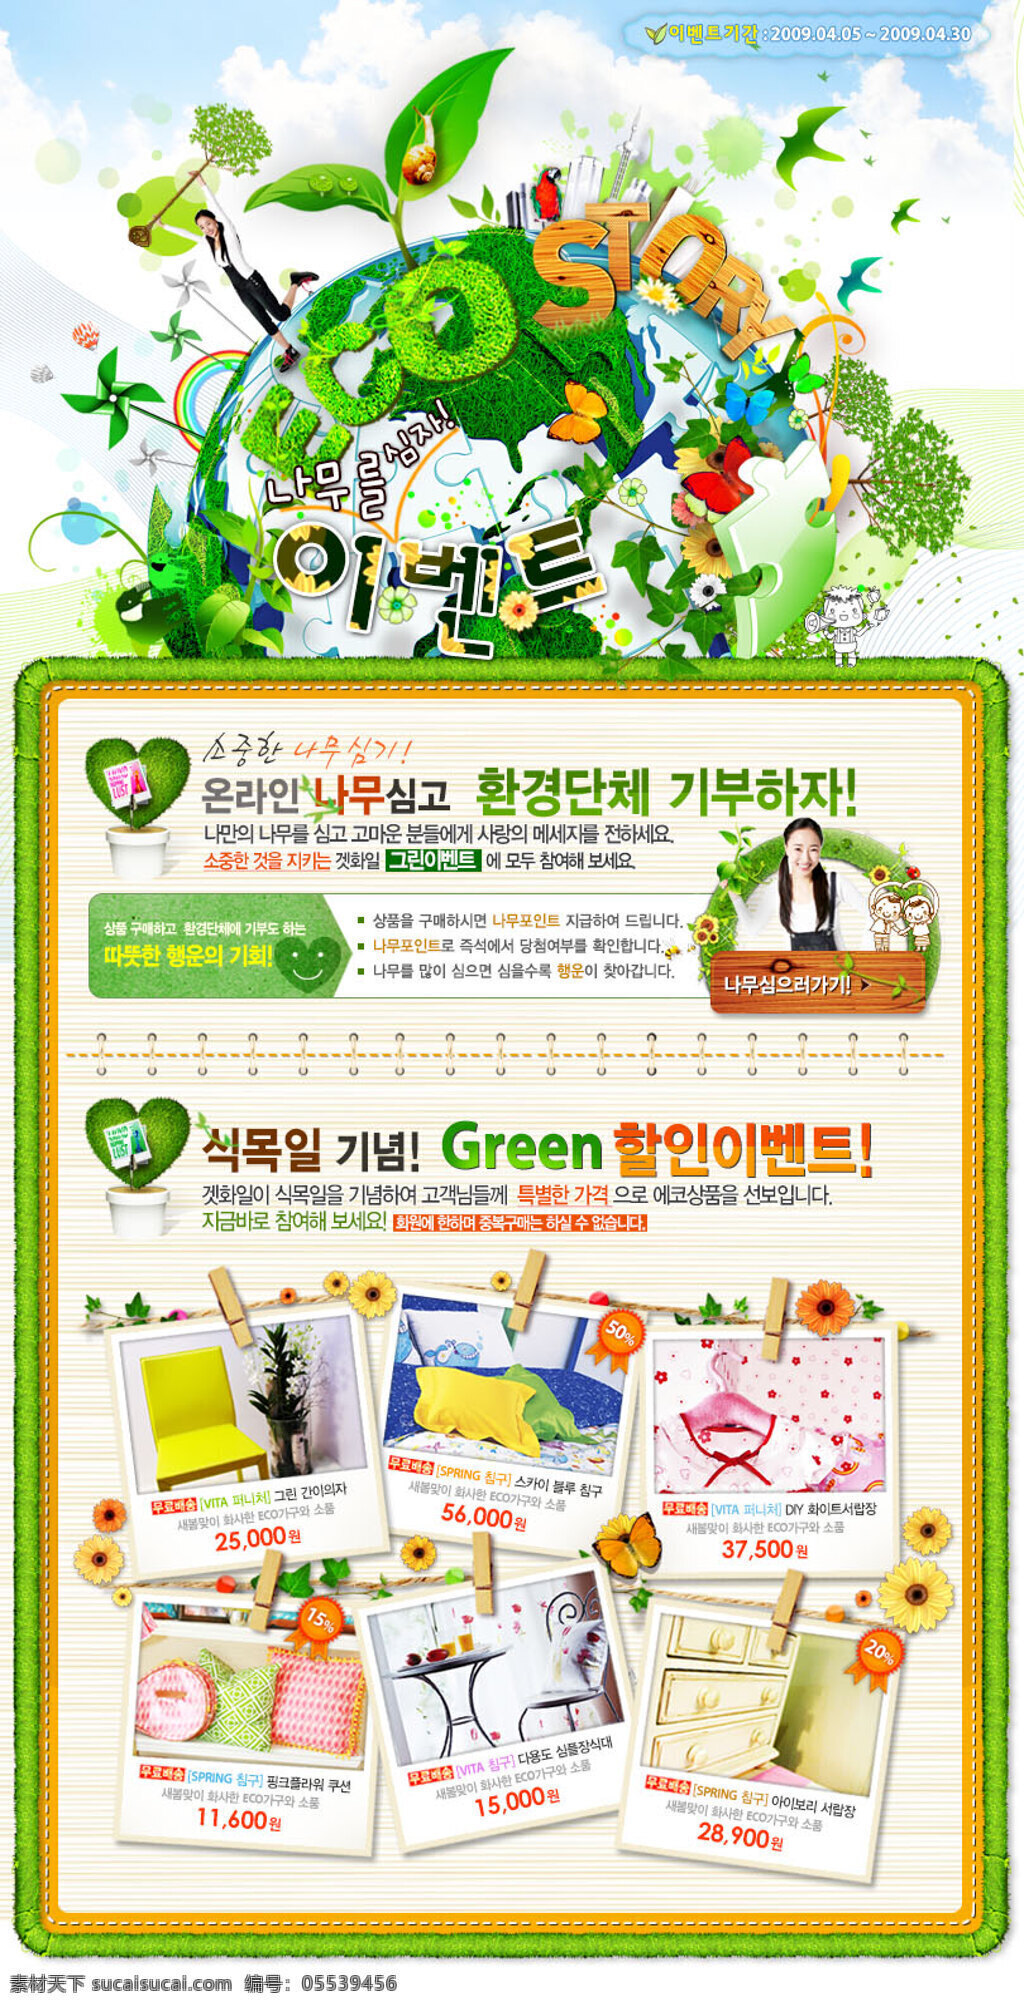 生态 环保 购物 专题 广告 网页 绿色环保展板 生态环保海报 节能环保 企业文化展板 展板模板 广告设计模板